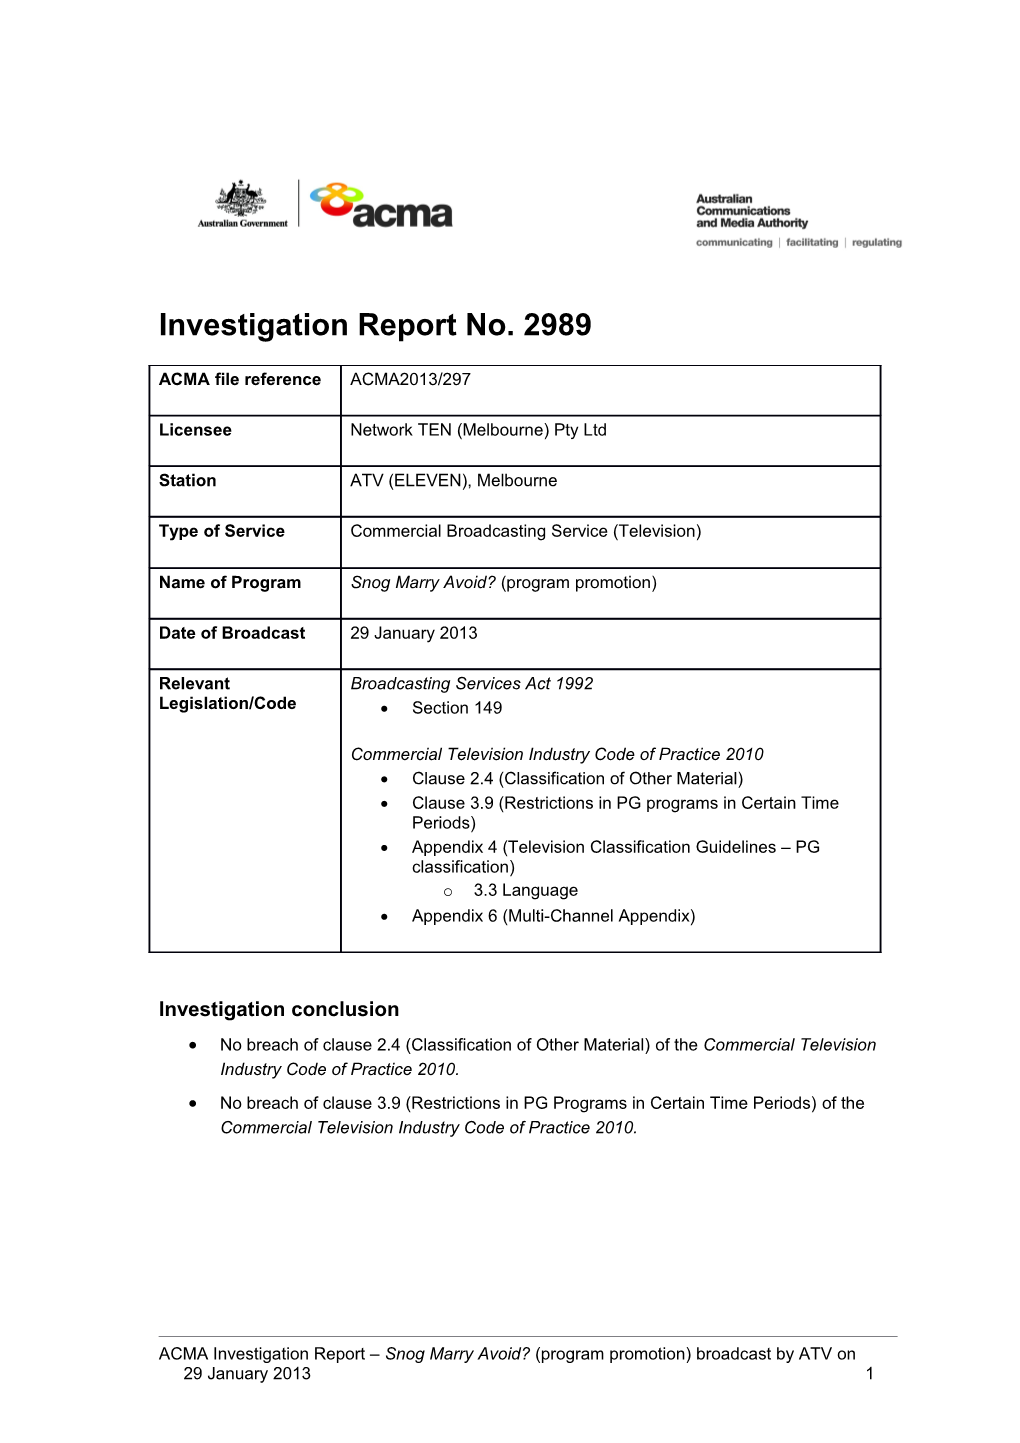 ATV (Eleven) - ACMA Investigation Report 2989